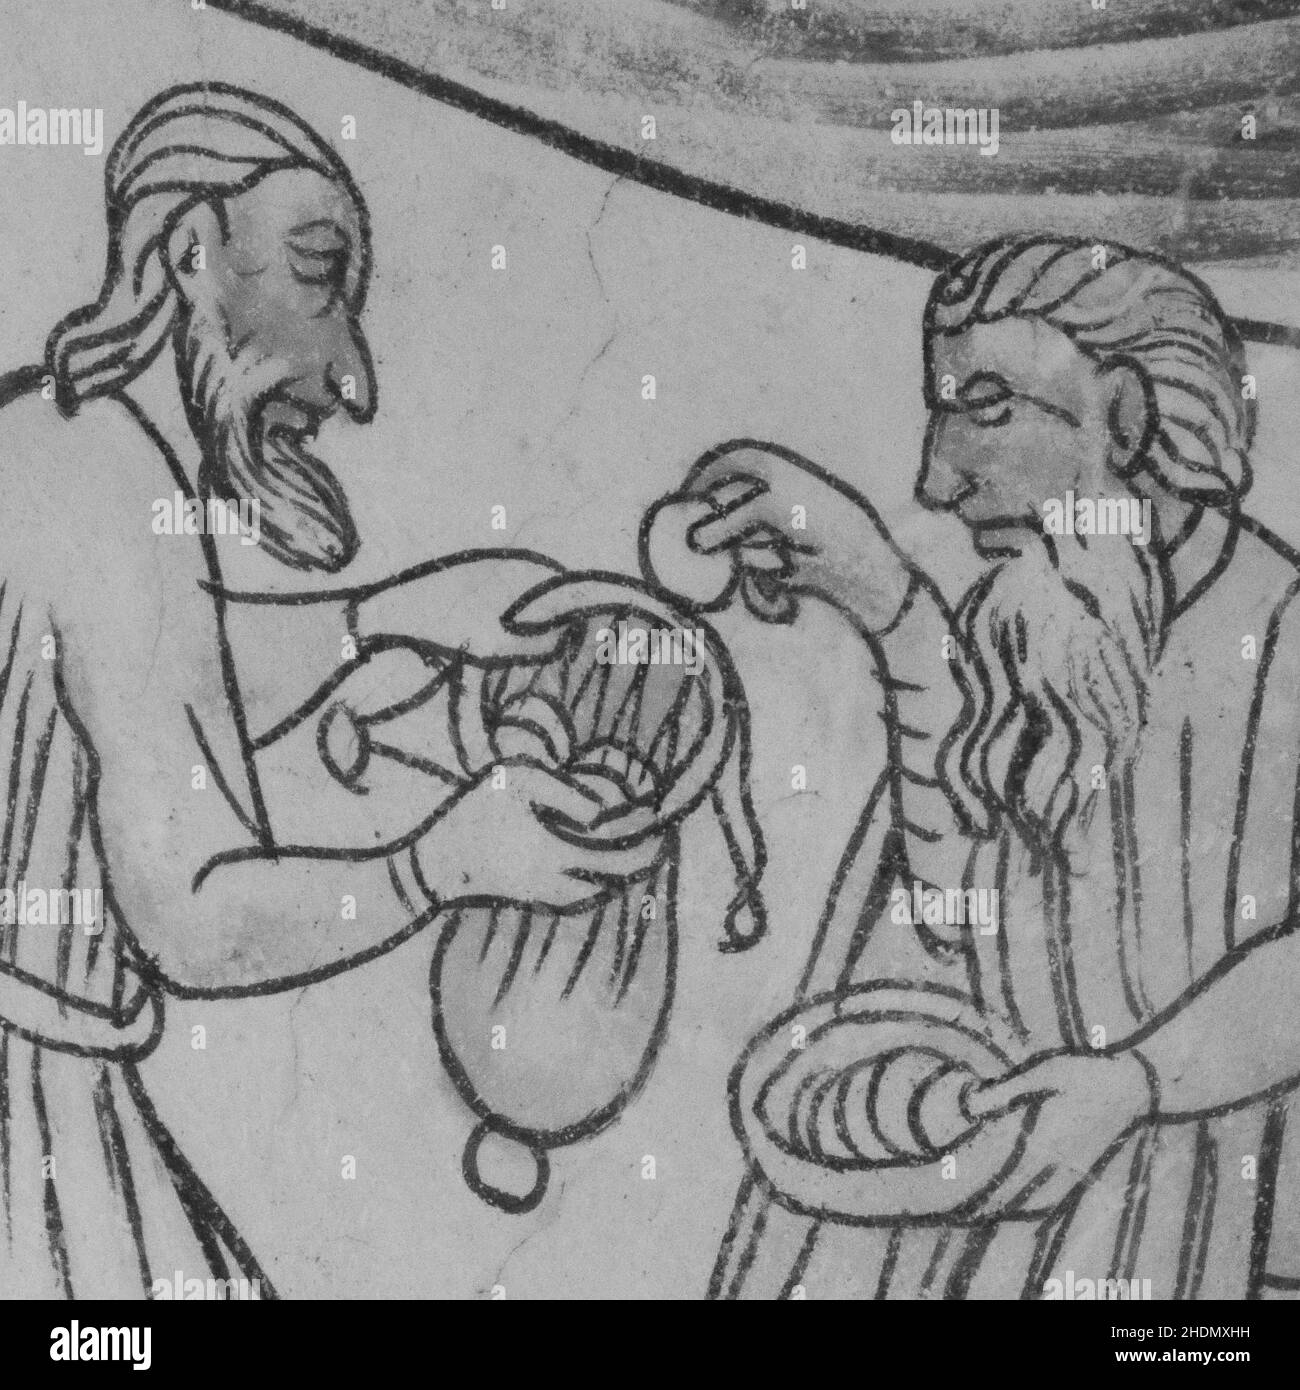 La bonne affaire de Judas.Trente morceaux d'argent donnés à Judas Iscariot par un prêtre juif.Une fresque gothique médiévale dans l'église Bronnestad, Suède, mai 1 Banque D'Images